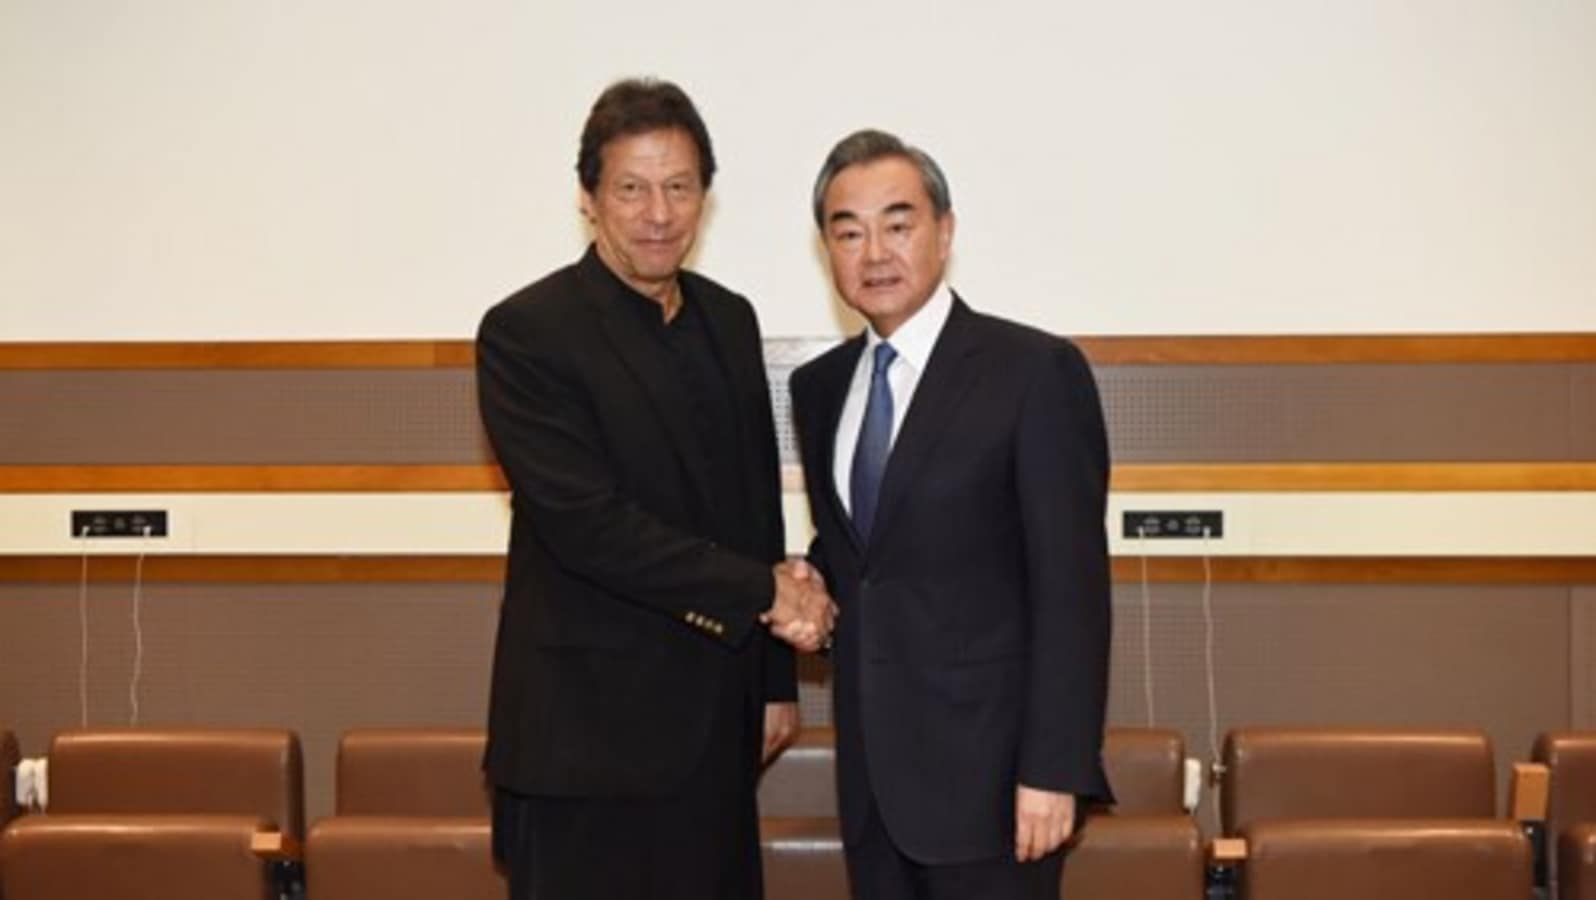 India critica a Wang Yi por sus comentarios sobre J&K en la reunión de la OIC en Islamabad |  Noticias del mundo